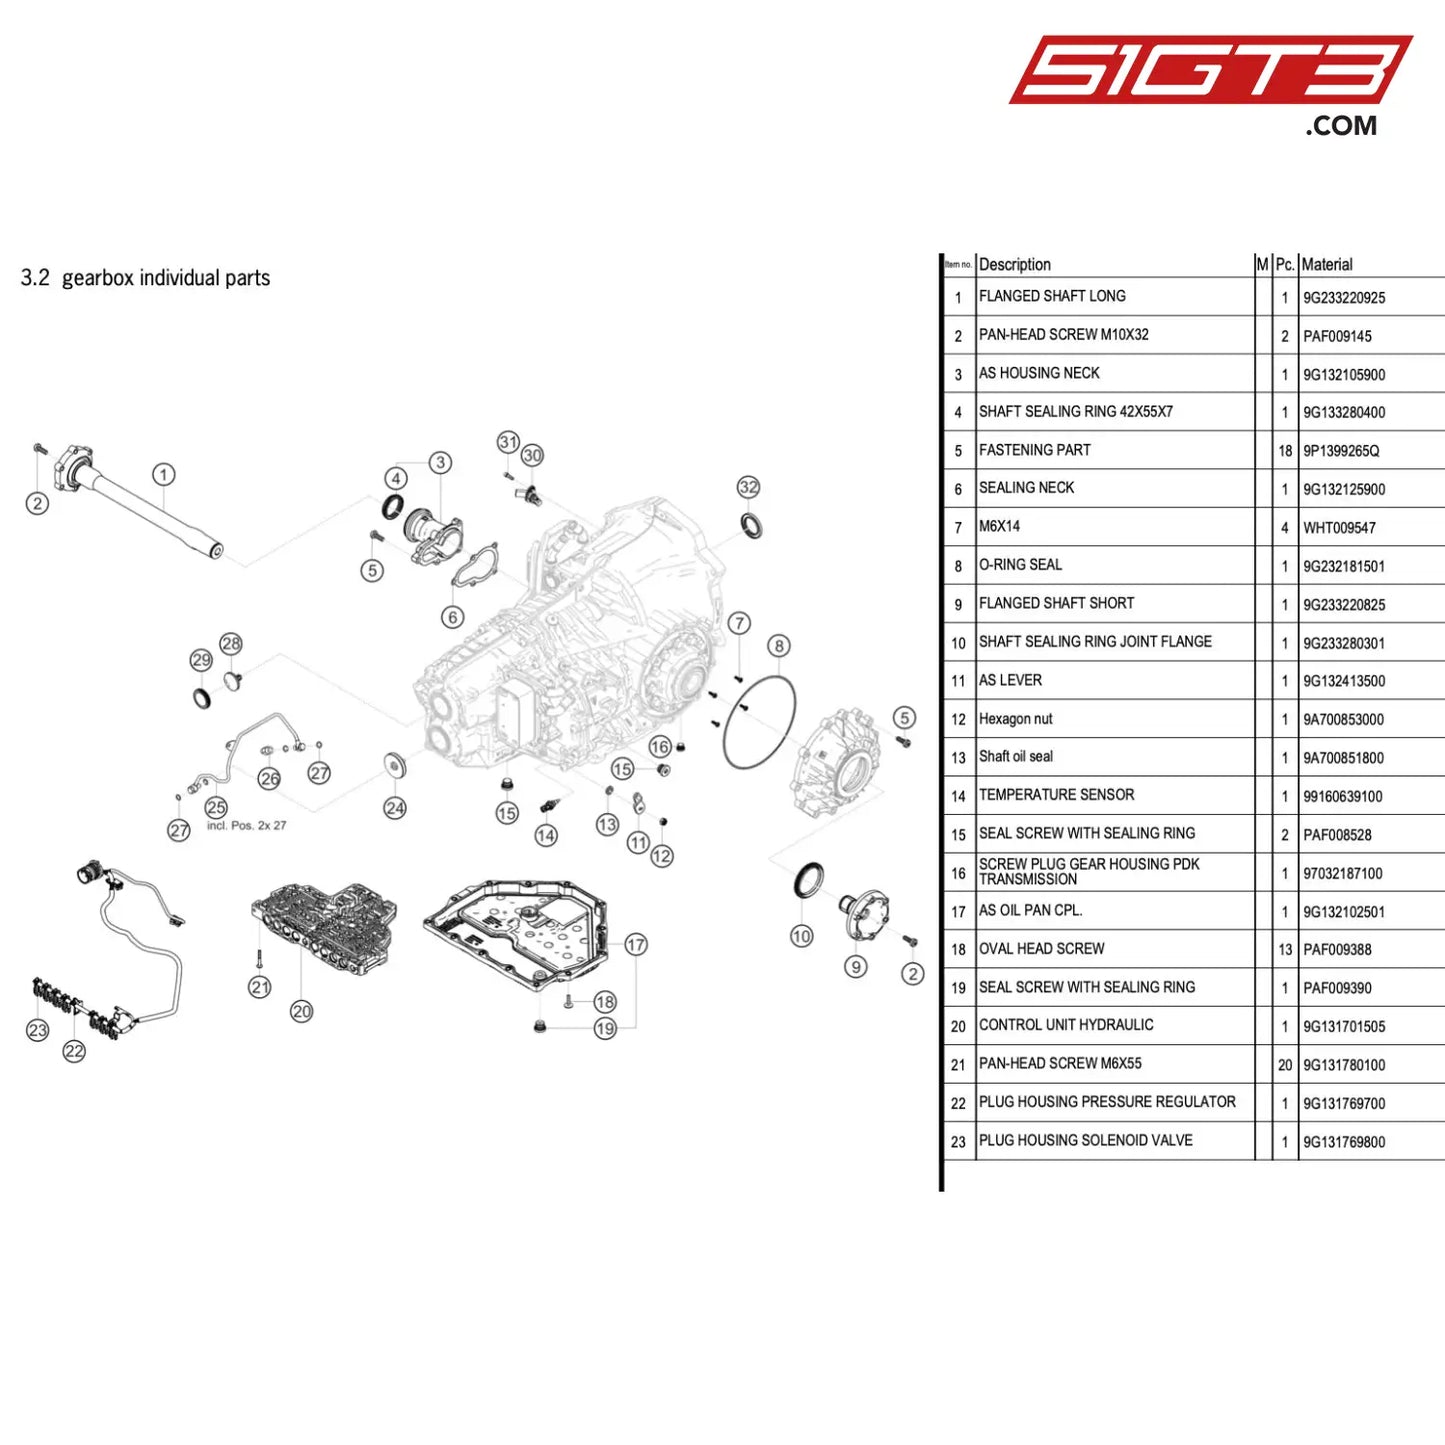 Screw Plug Gear Housing Pdk Transmission - 97032187100 [Porsche 718 Cayman Gt4 Rs Clubsport] Gearbox